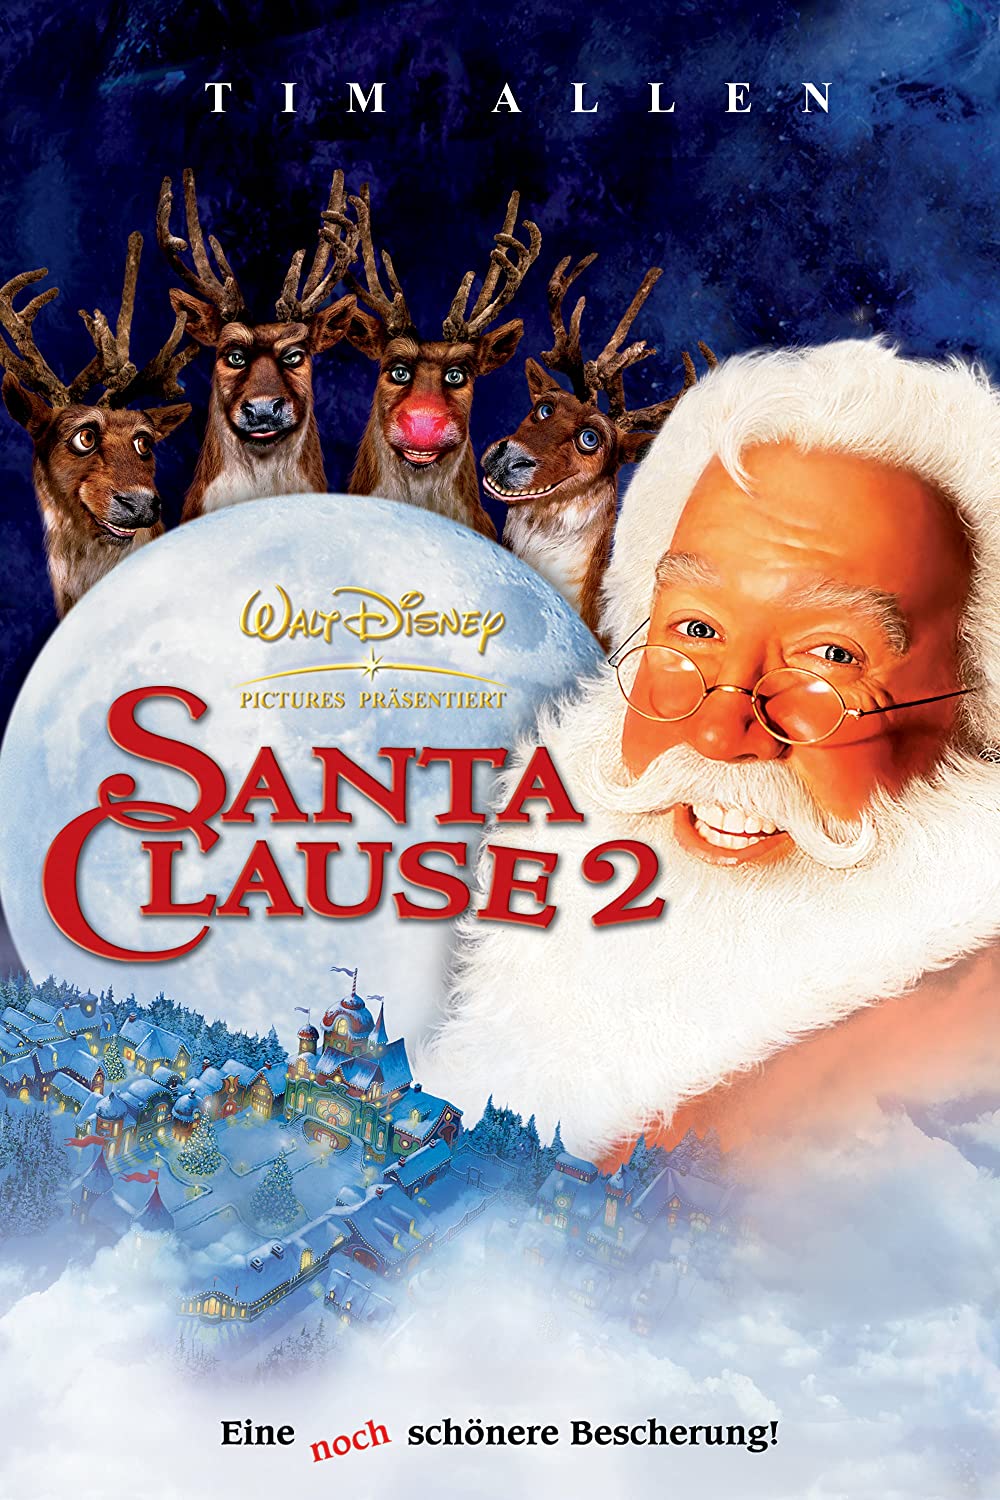 Filmbeschreibung zu Santa Clause 2 - Eine noch schönere Bescherung